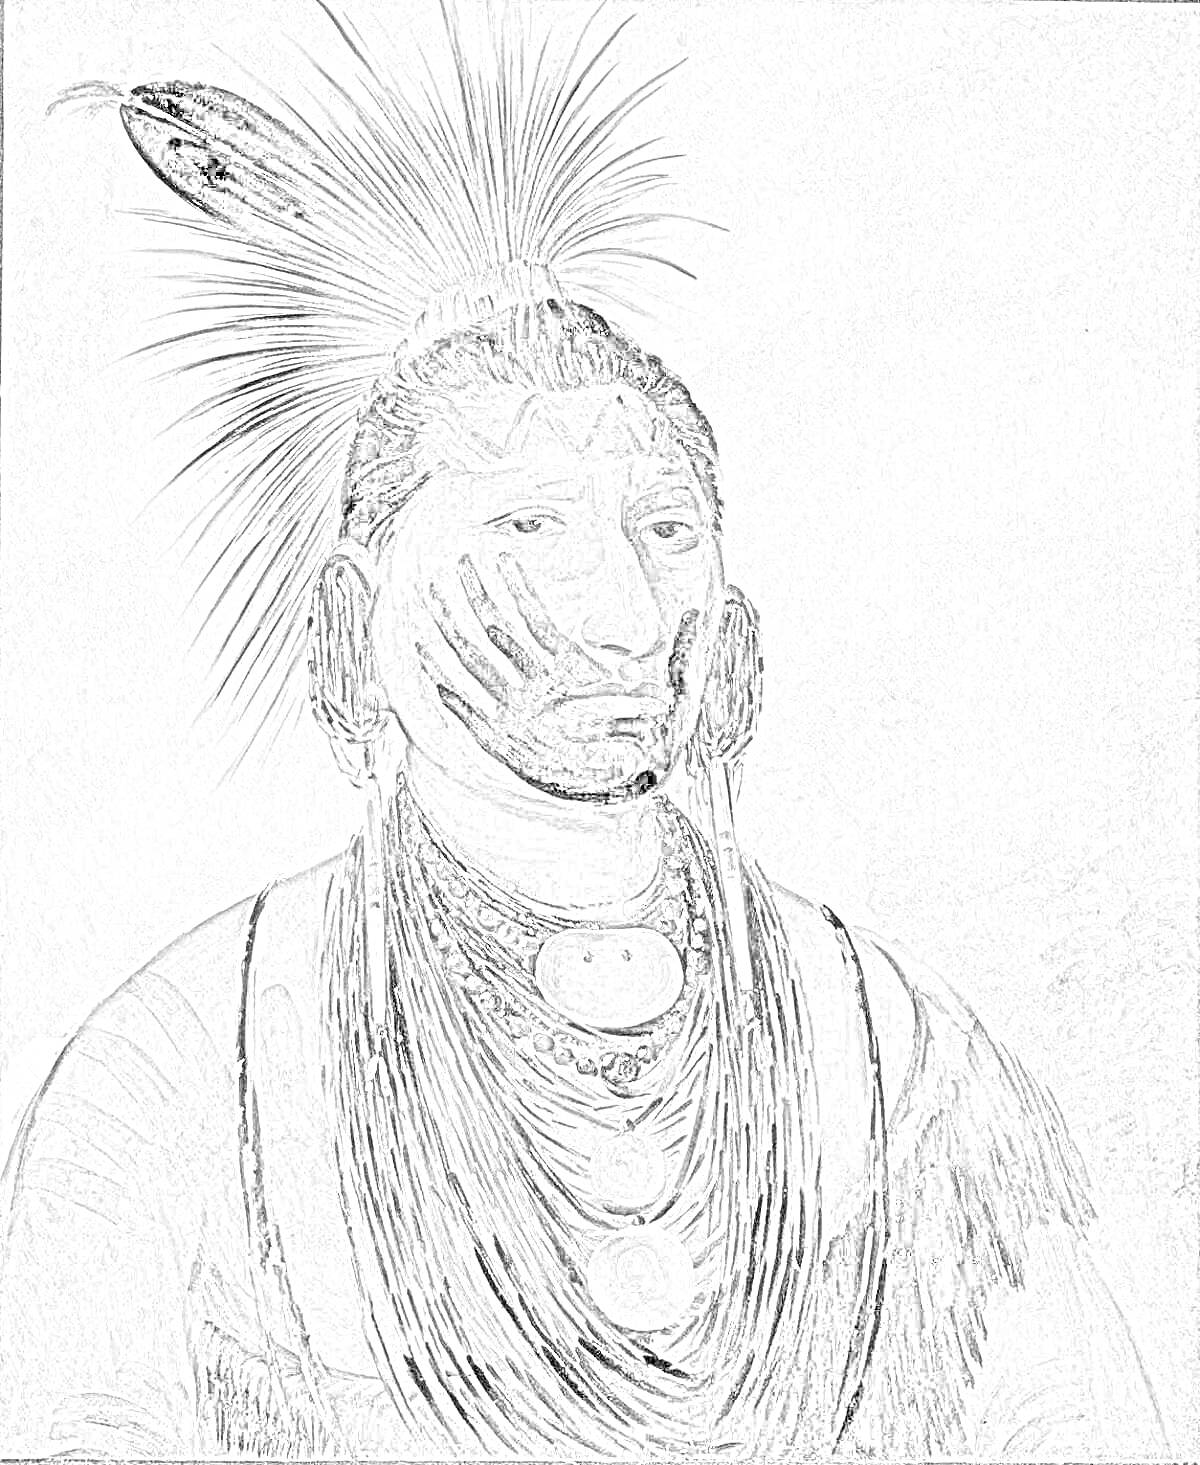 Раскраска Индейский воин с пером в волосах и ожерельем, традиционная раскраска на лице